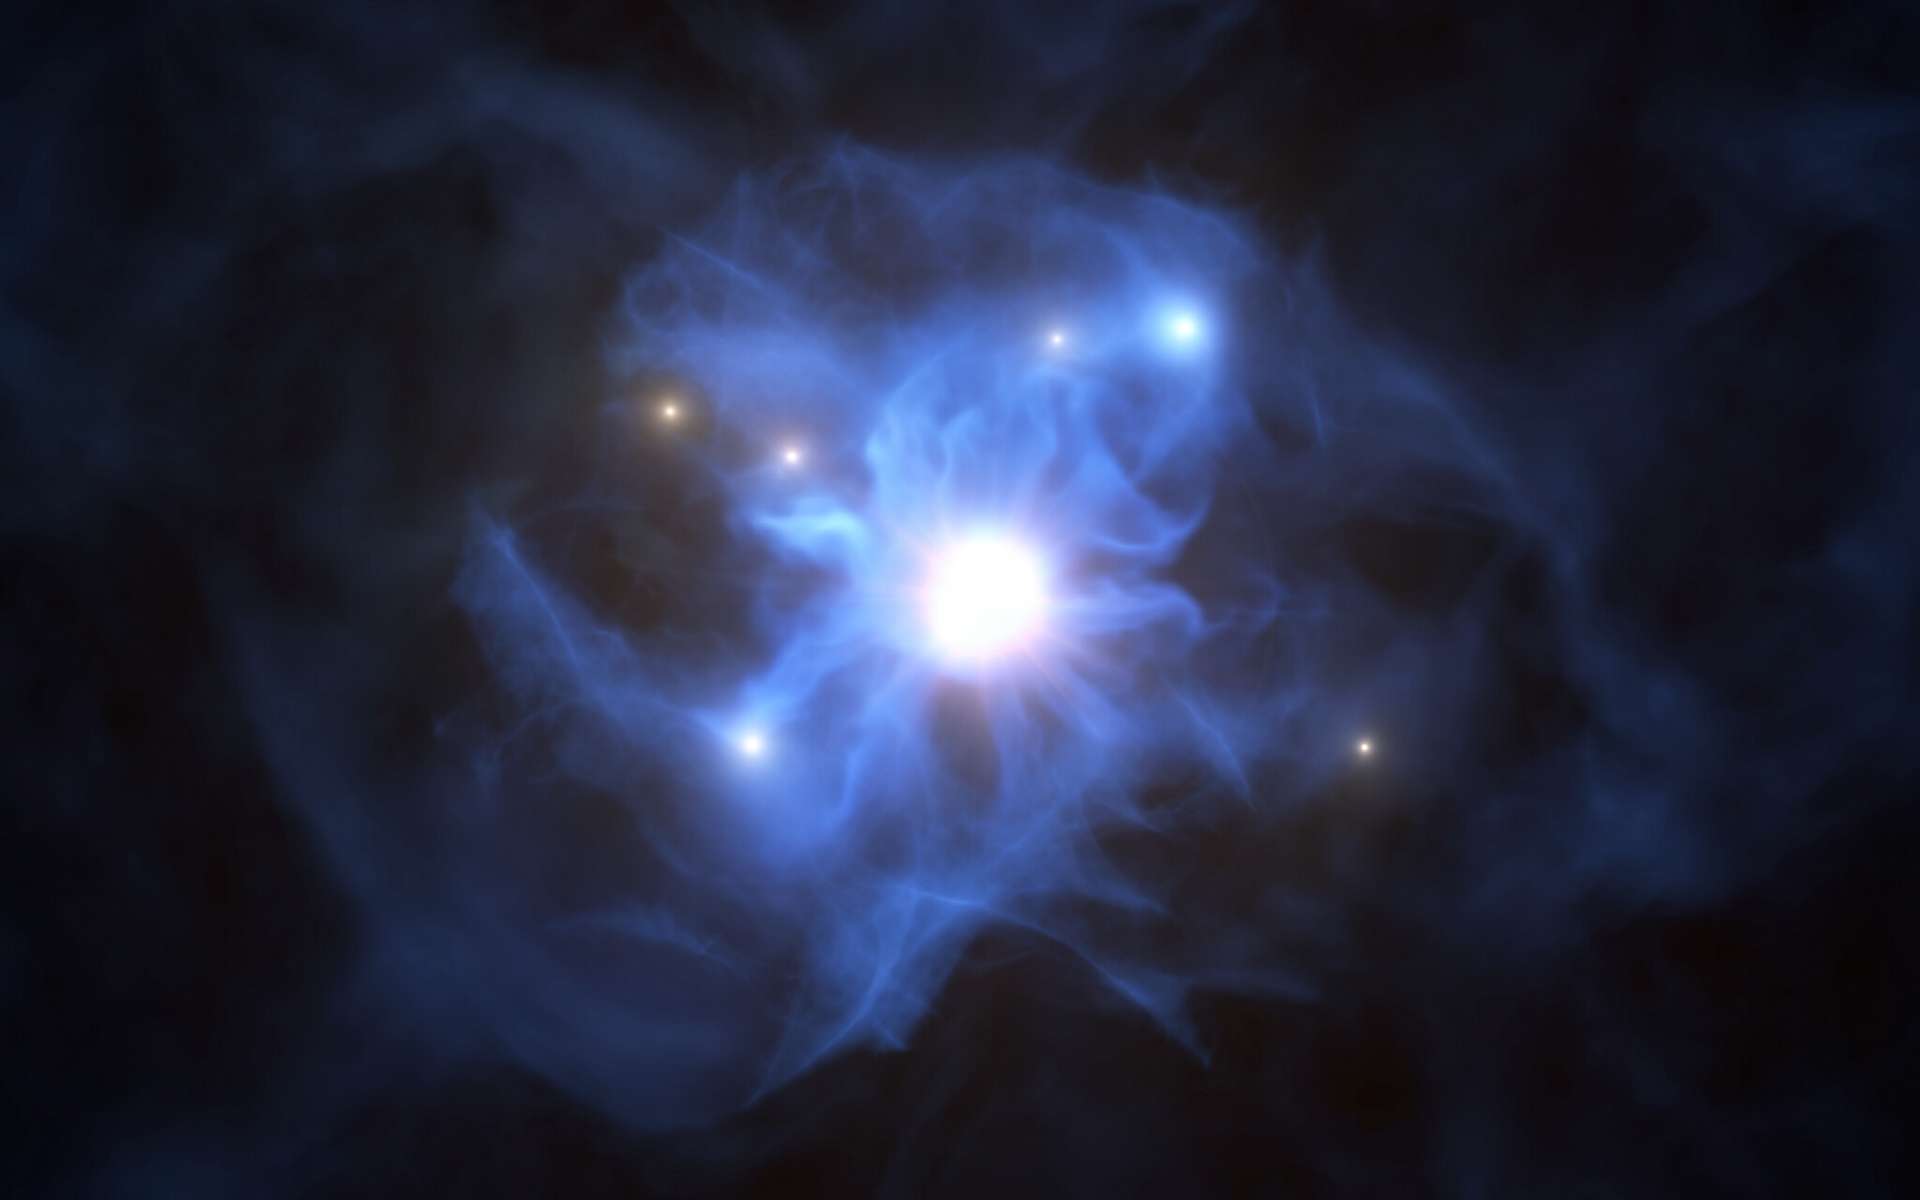 Grâce au Very Large Telescope (VLT) de l’ESO, les astronomes ont découvert six galaxies situées en périphérie d’un trou noir supermassif. C’est la toute première fois qu’un tel groupement est observé durant le premier milliard d’années de l’Univers. Sur cette vue d’artiste figurent le trou noir central ainsi que les galaxies piégées au sein de sa toile de gaz. Le trou noir et le disque qui l’entoure composent le quasar baptisé SDSS J103027.09+052455.0. Sa brillance augmente à mesure qu’il engouffre la matière qui l’entoure. © ESO/L. Calçada